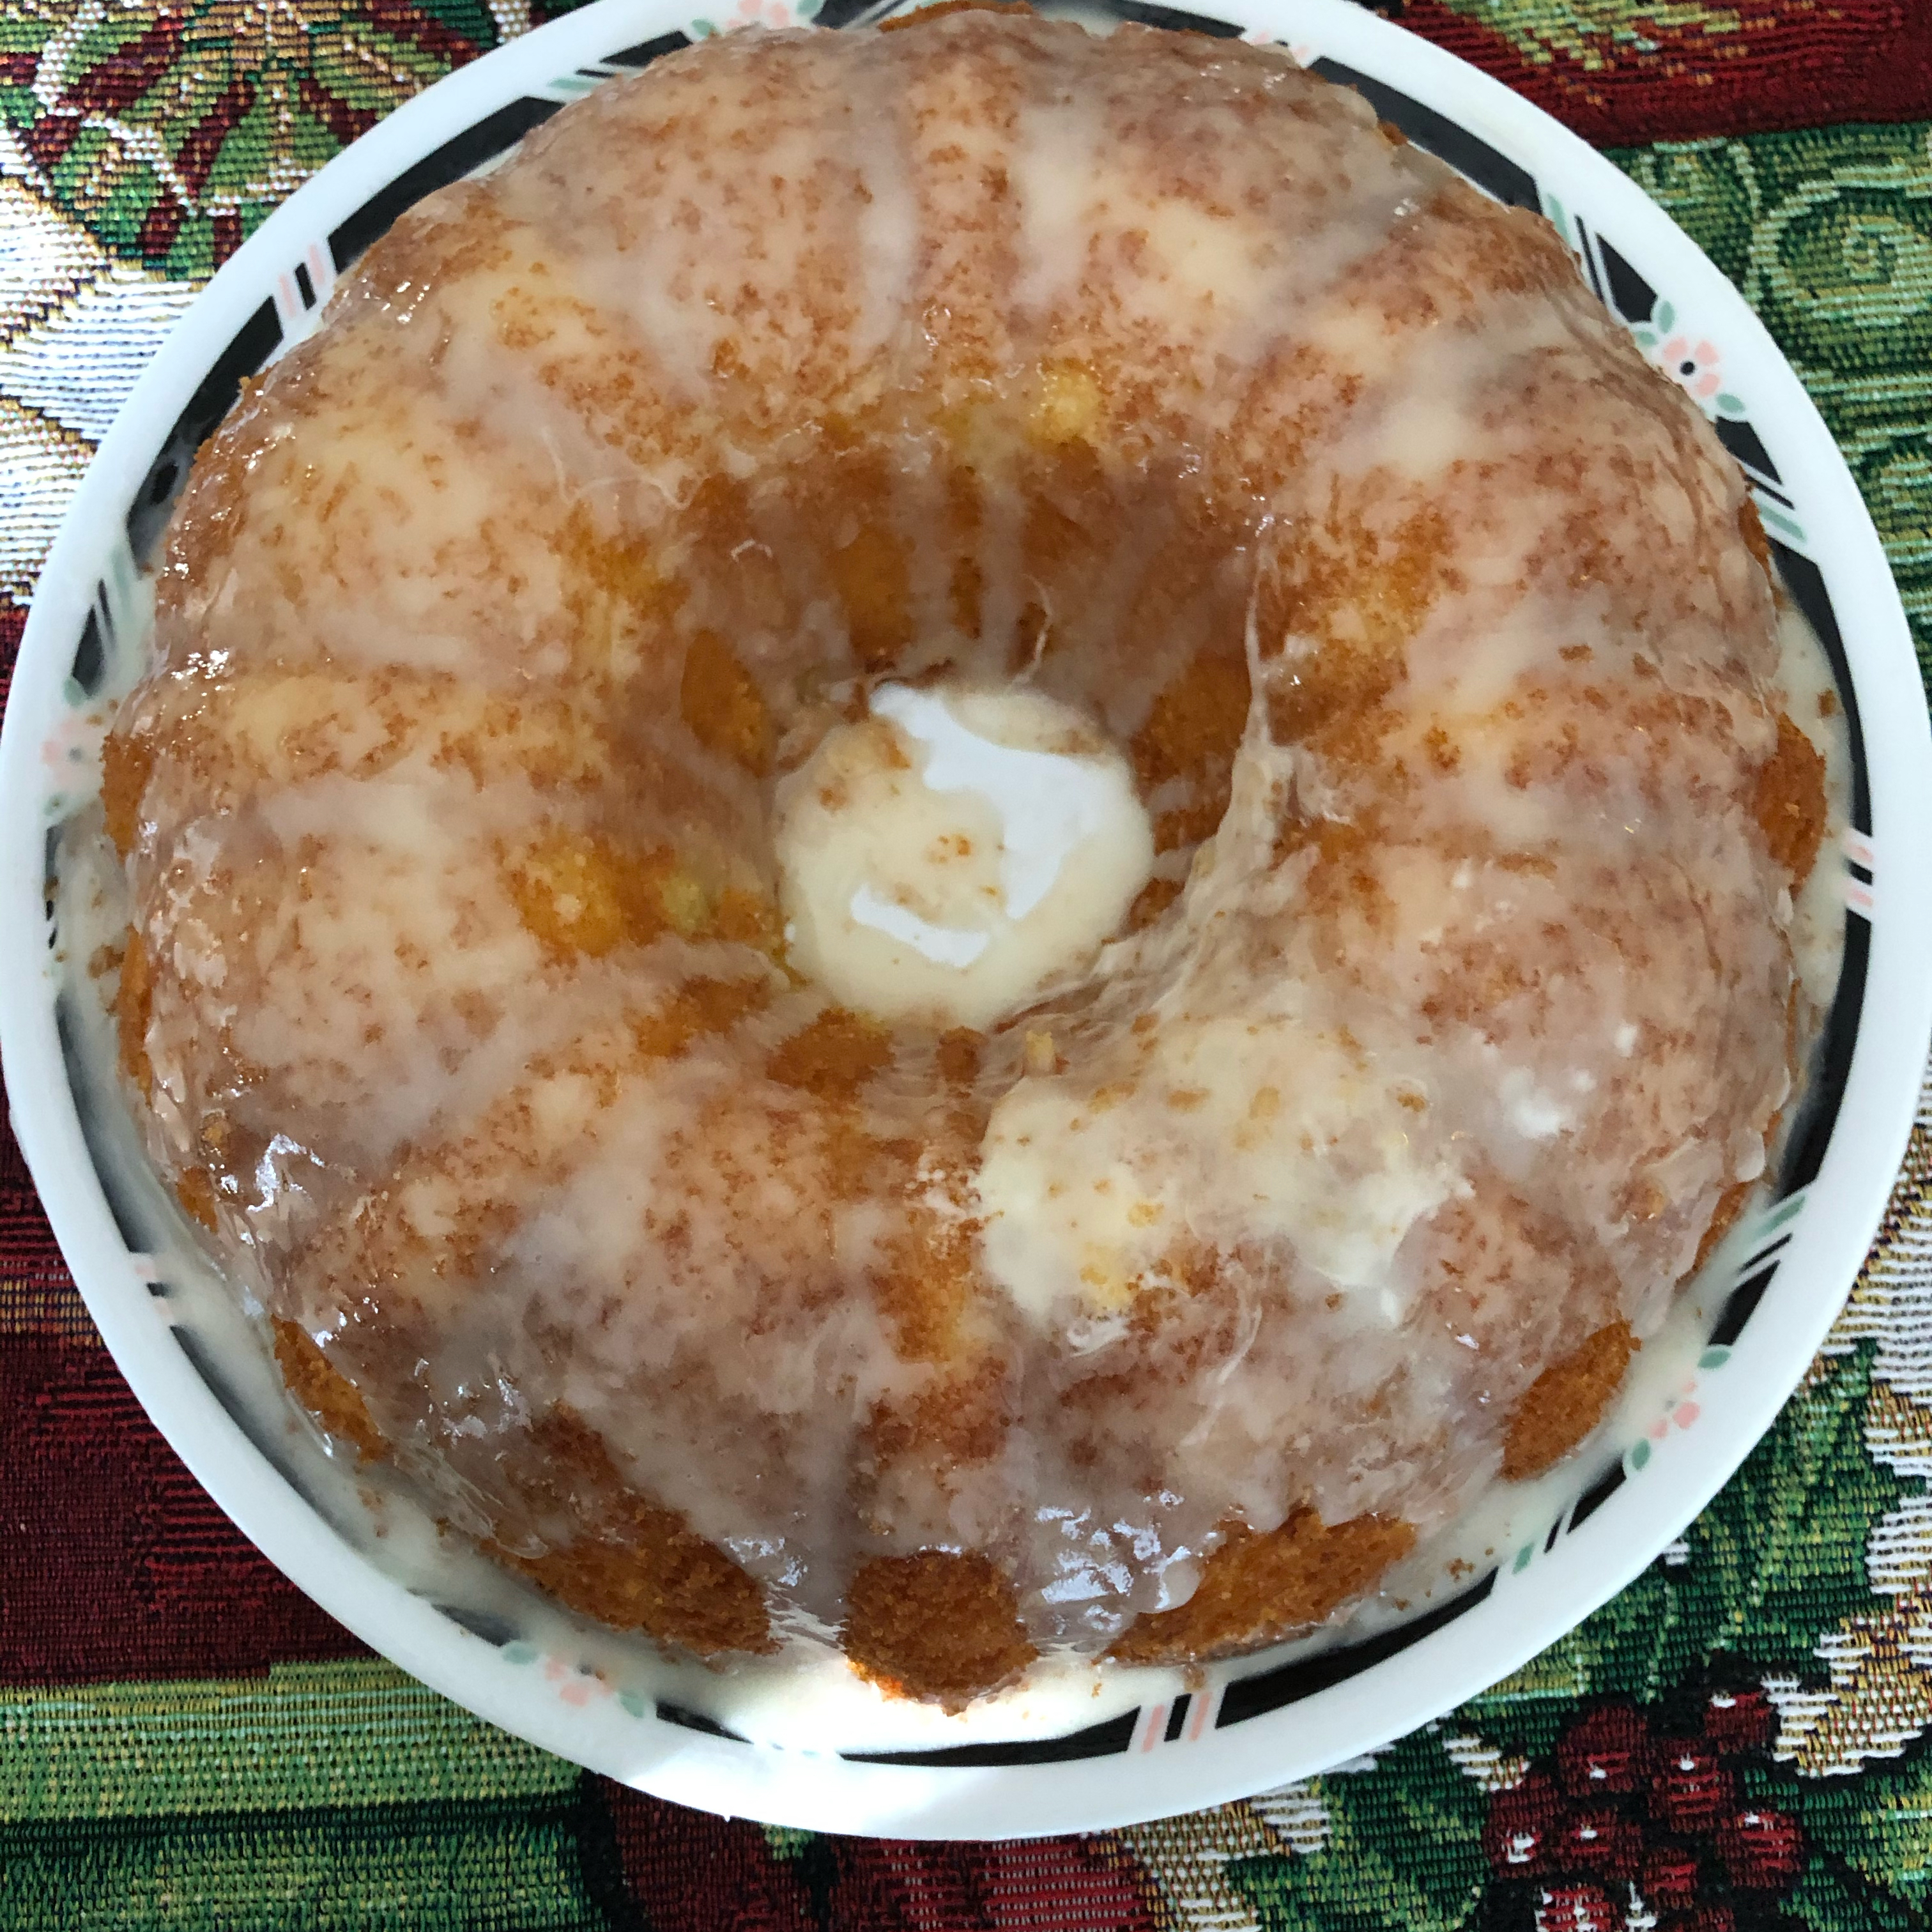 Duncan Hines Honey Bun Cake Recipe : Praline-Pumpkin Cake recipe - from Tablespoon! / Add 2 duncan hines white vanilla cake mix and mix well step 5: